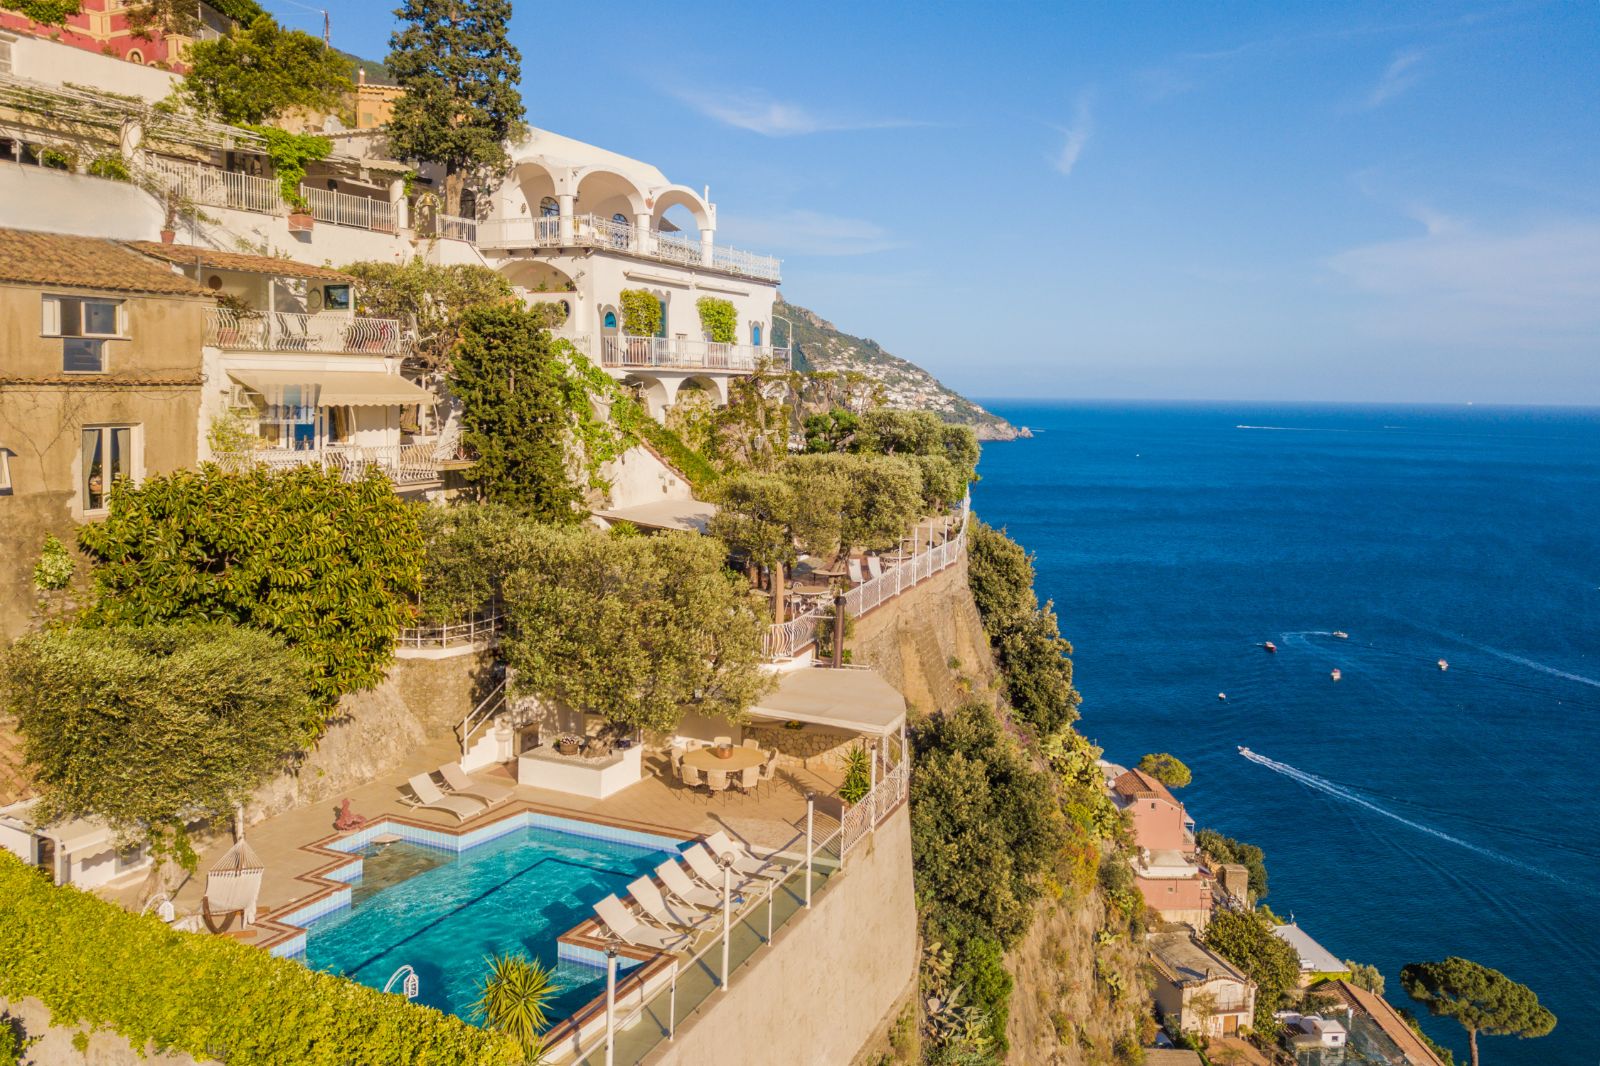 View of Villa Tuffariello in Amalfi